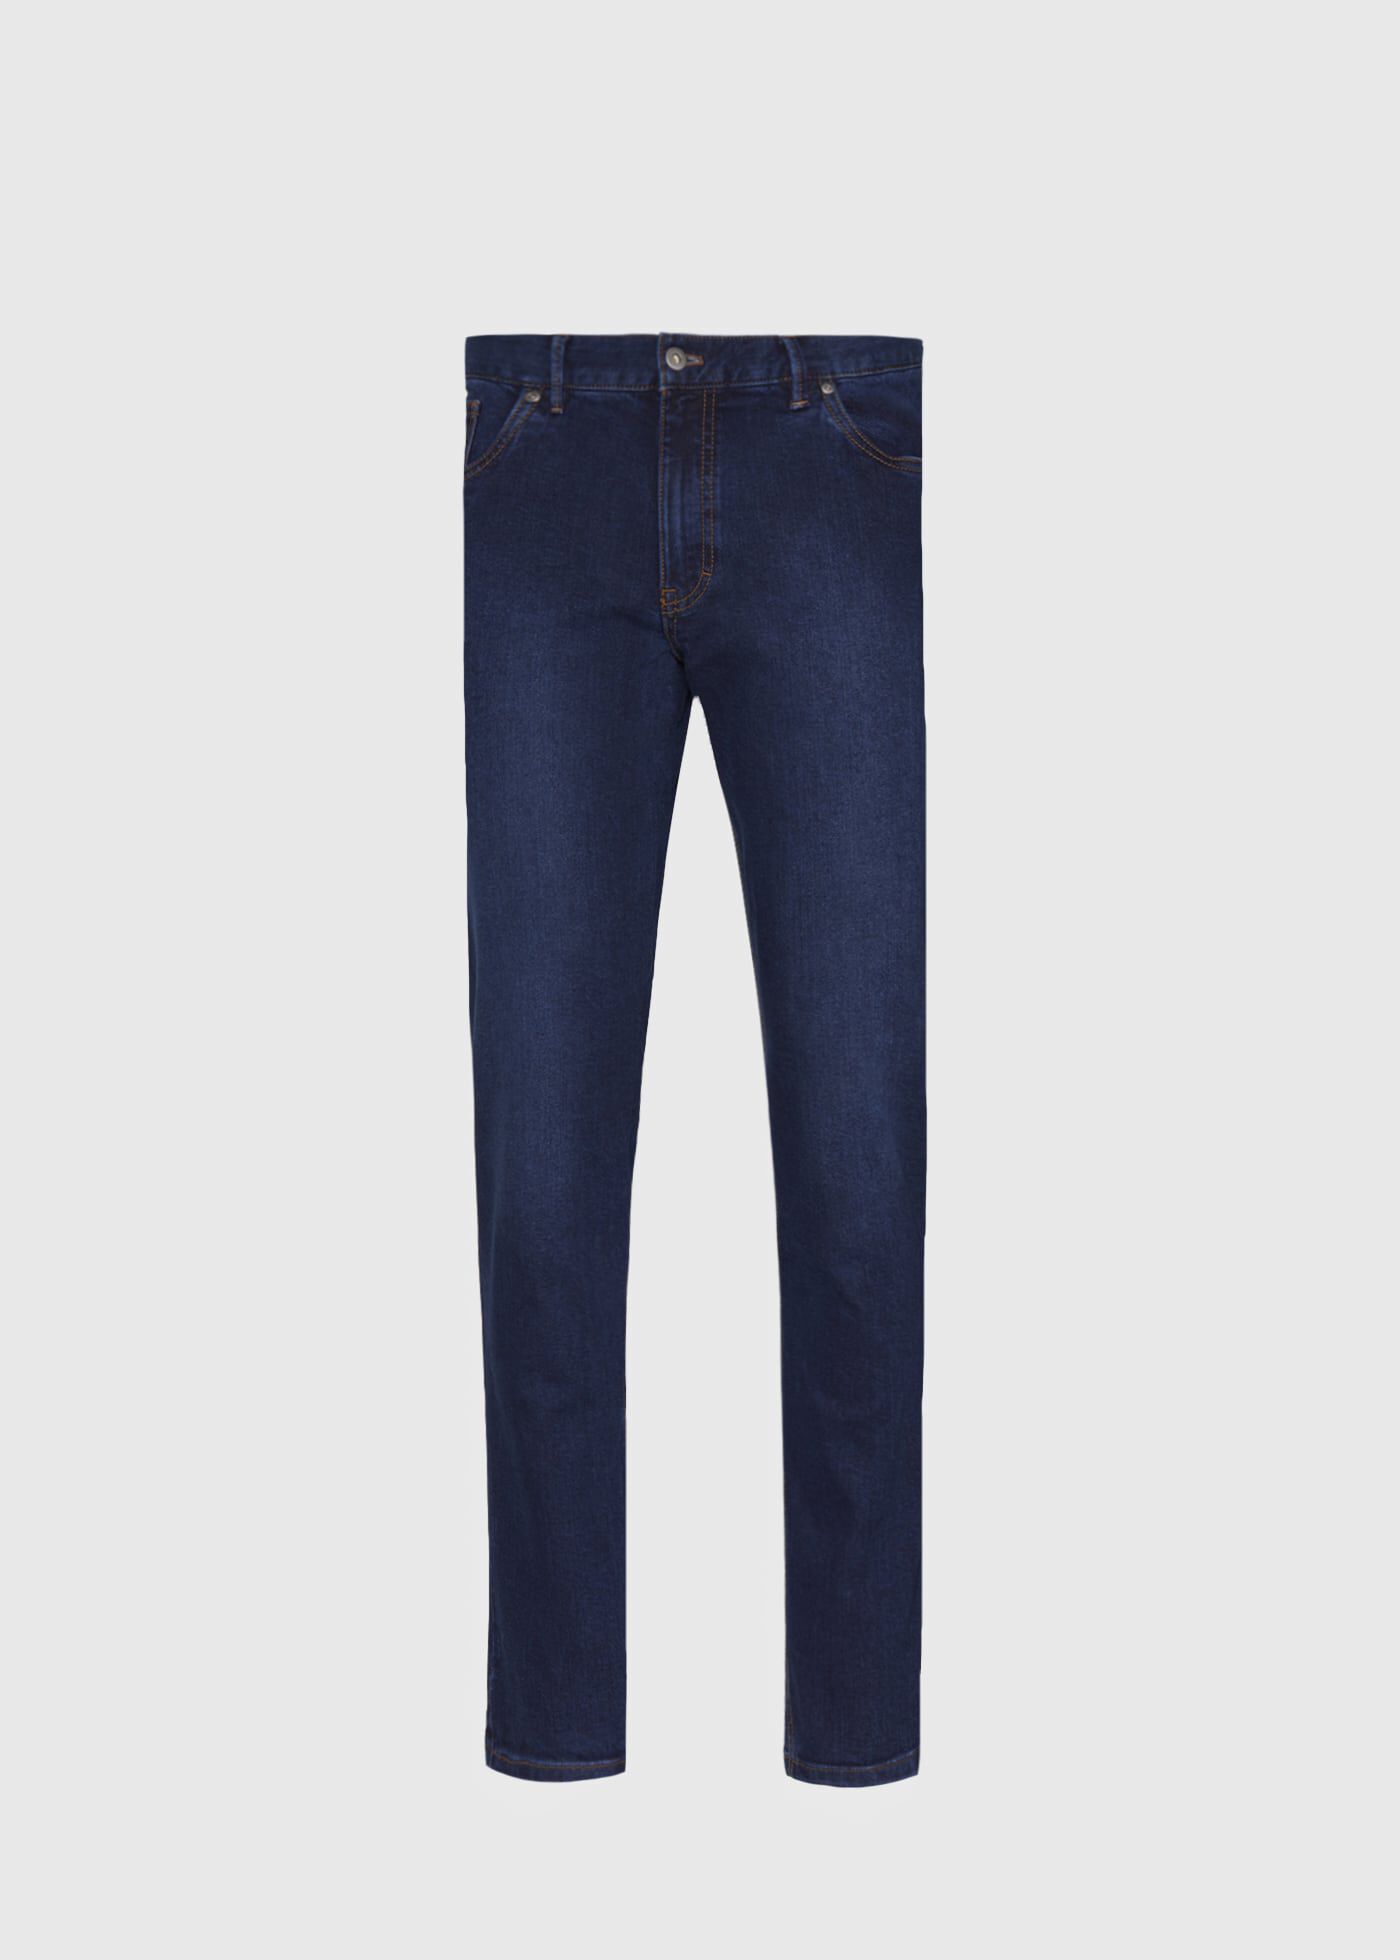 Jacob Cohen Blue Cotton Jeans Limited Edition – 2Men